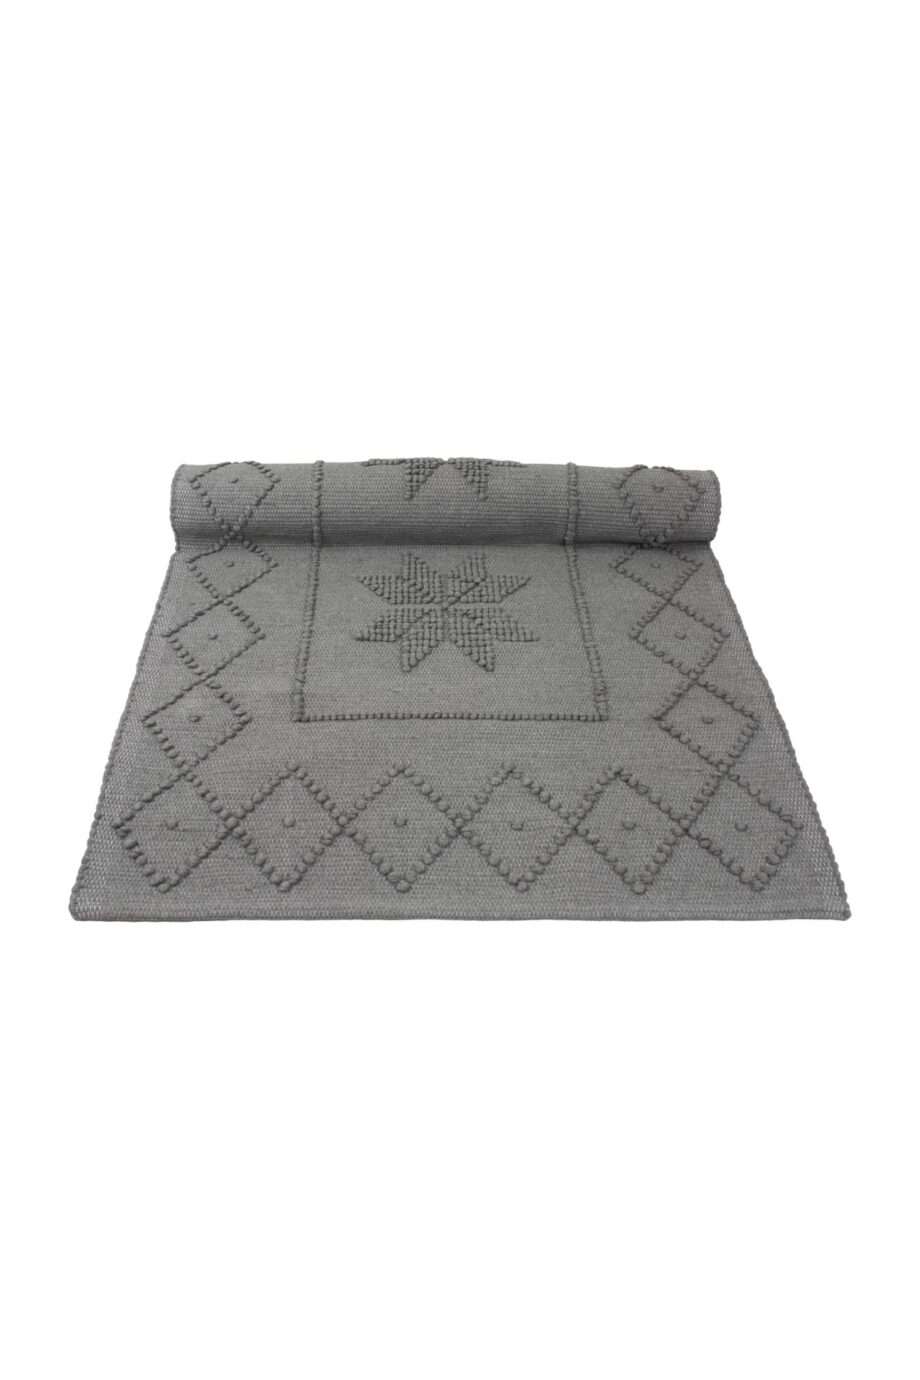 star grey woven cotton floor mat xsmall